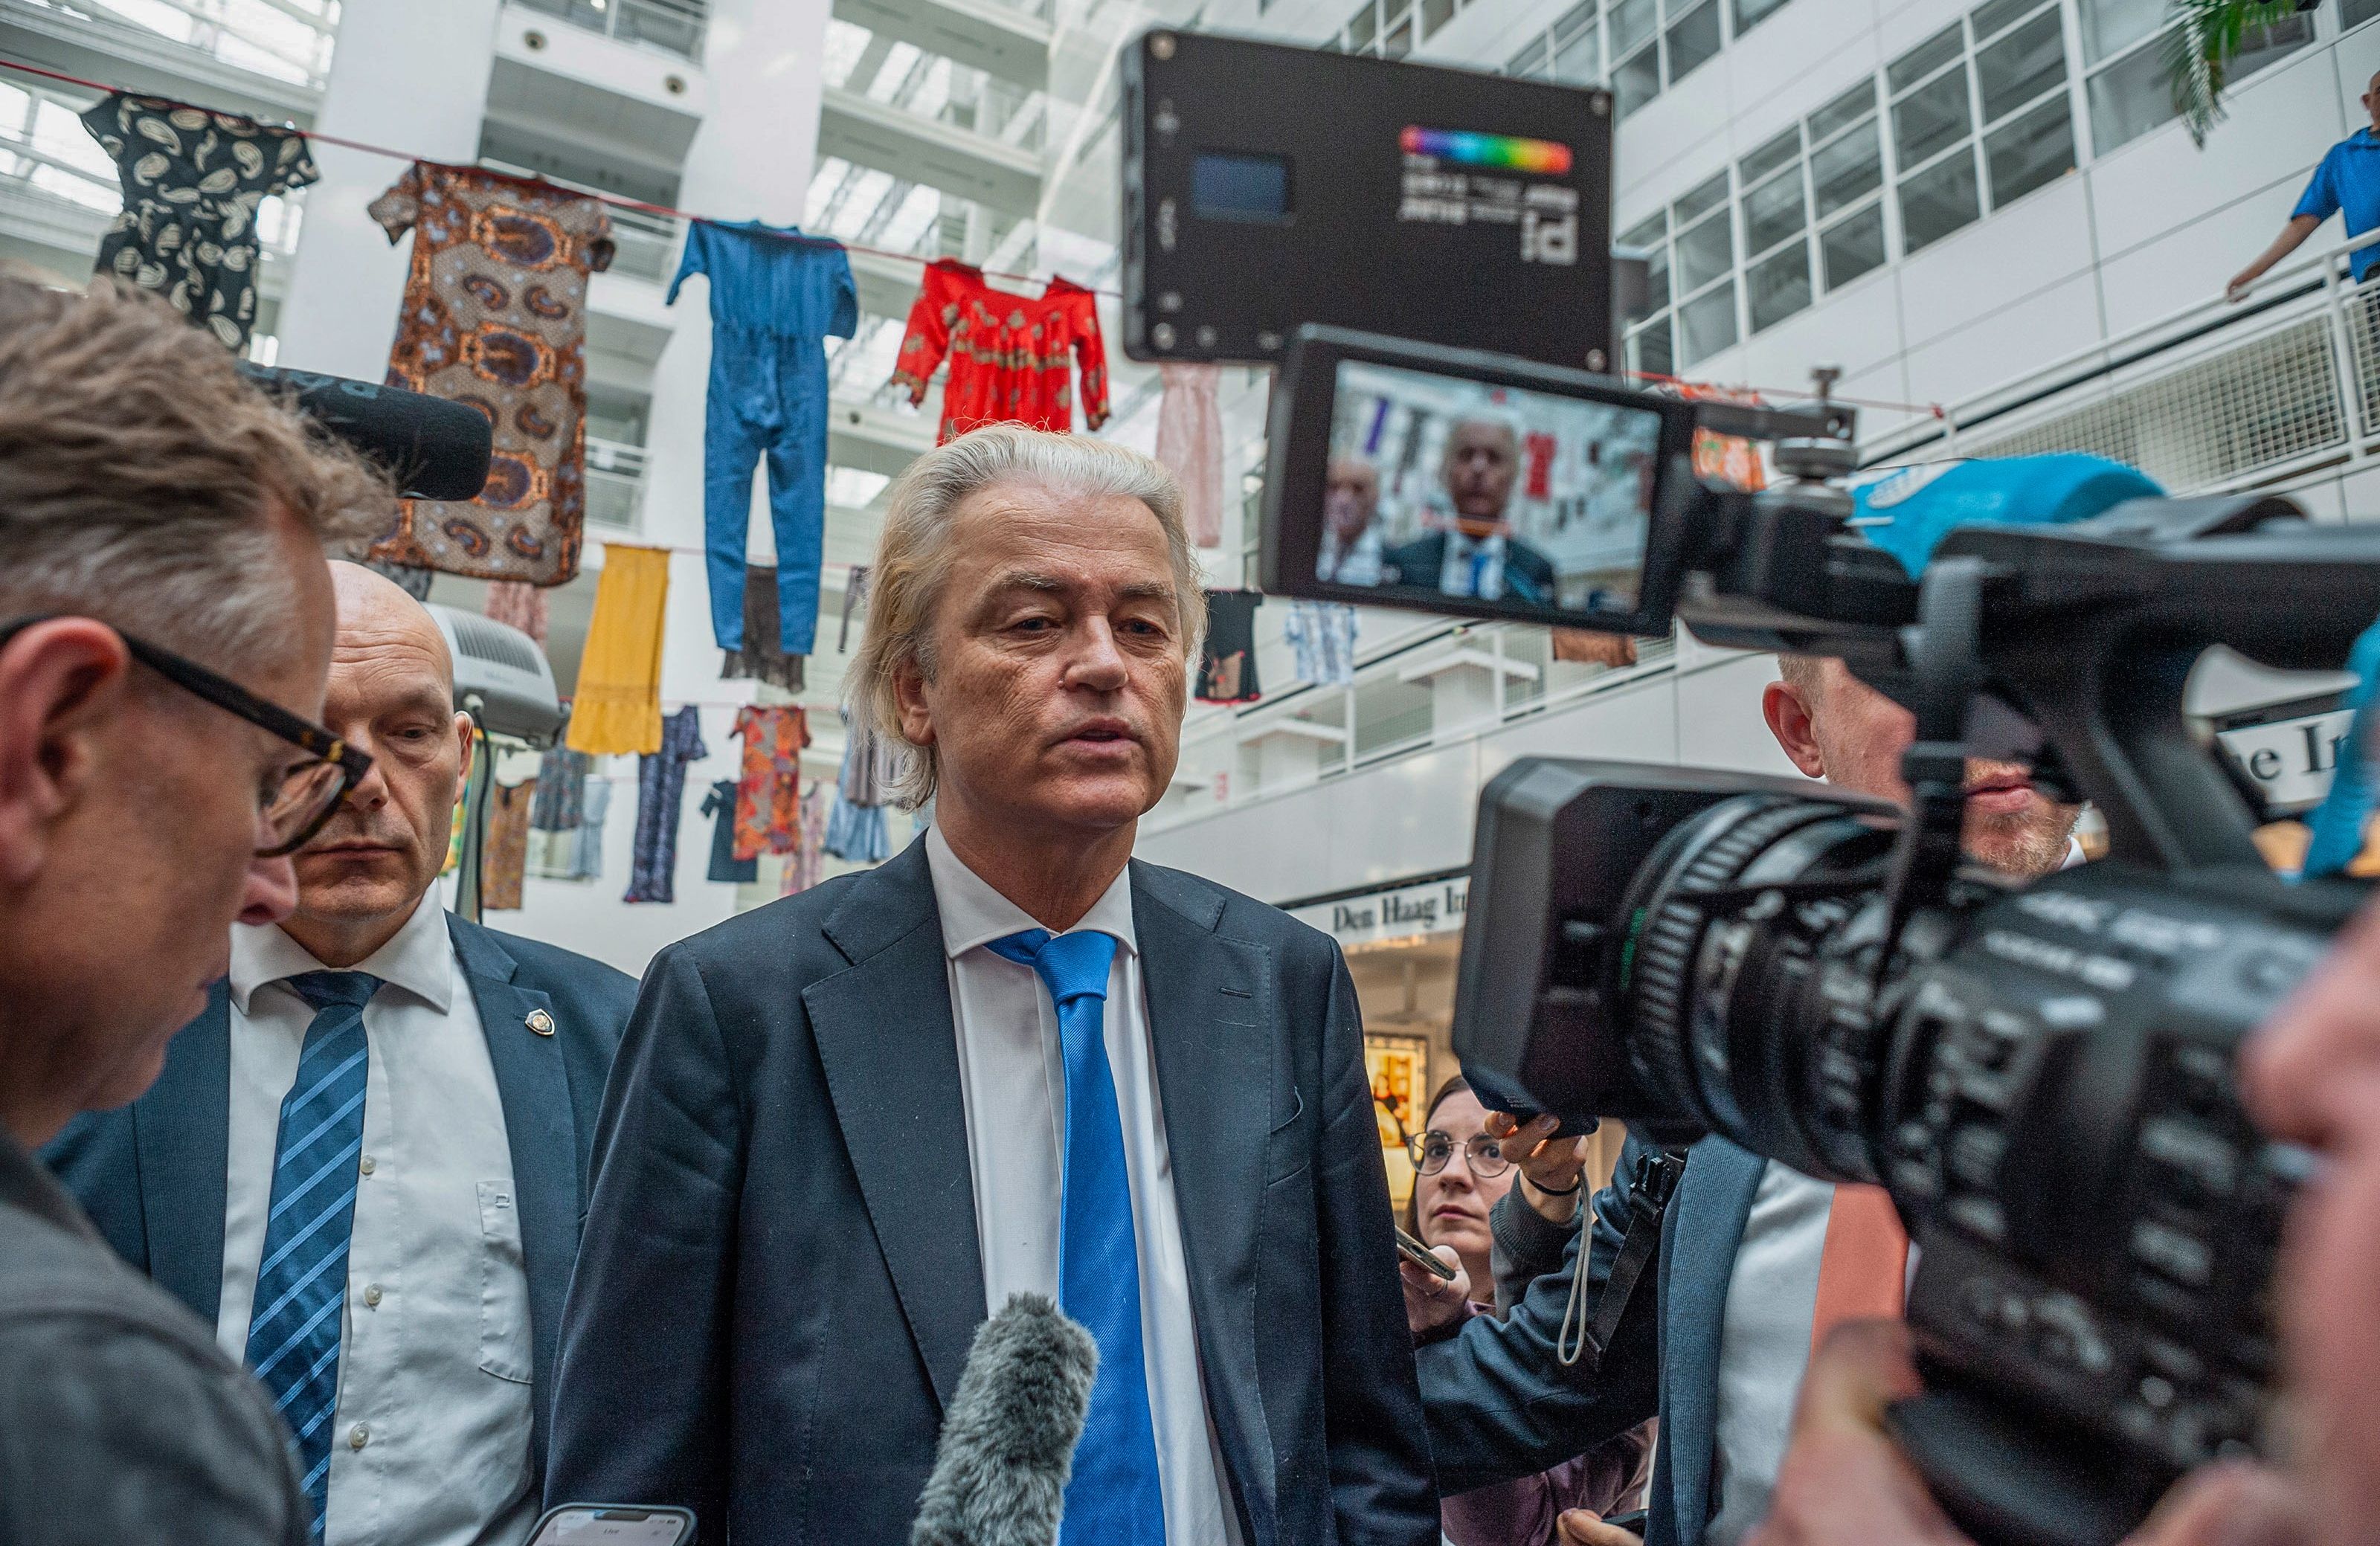 European Parliament elections: Not quite a 'Trumpian moment'